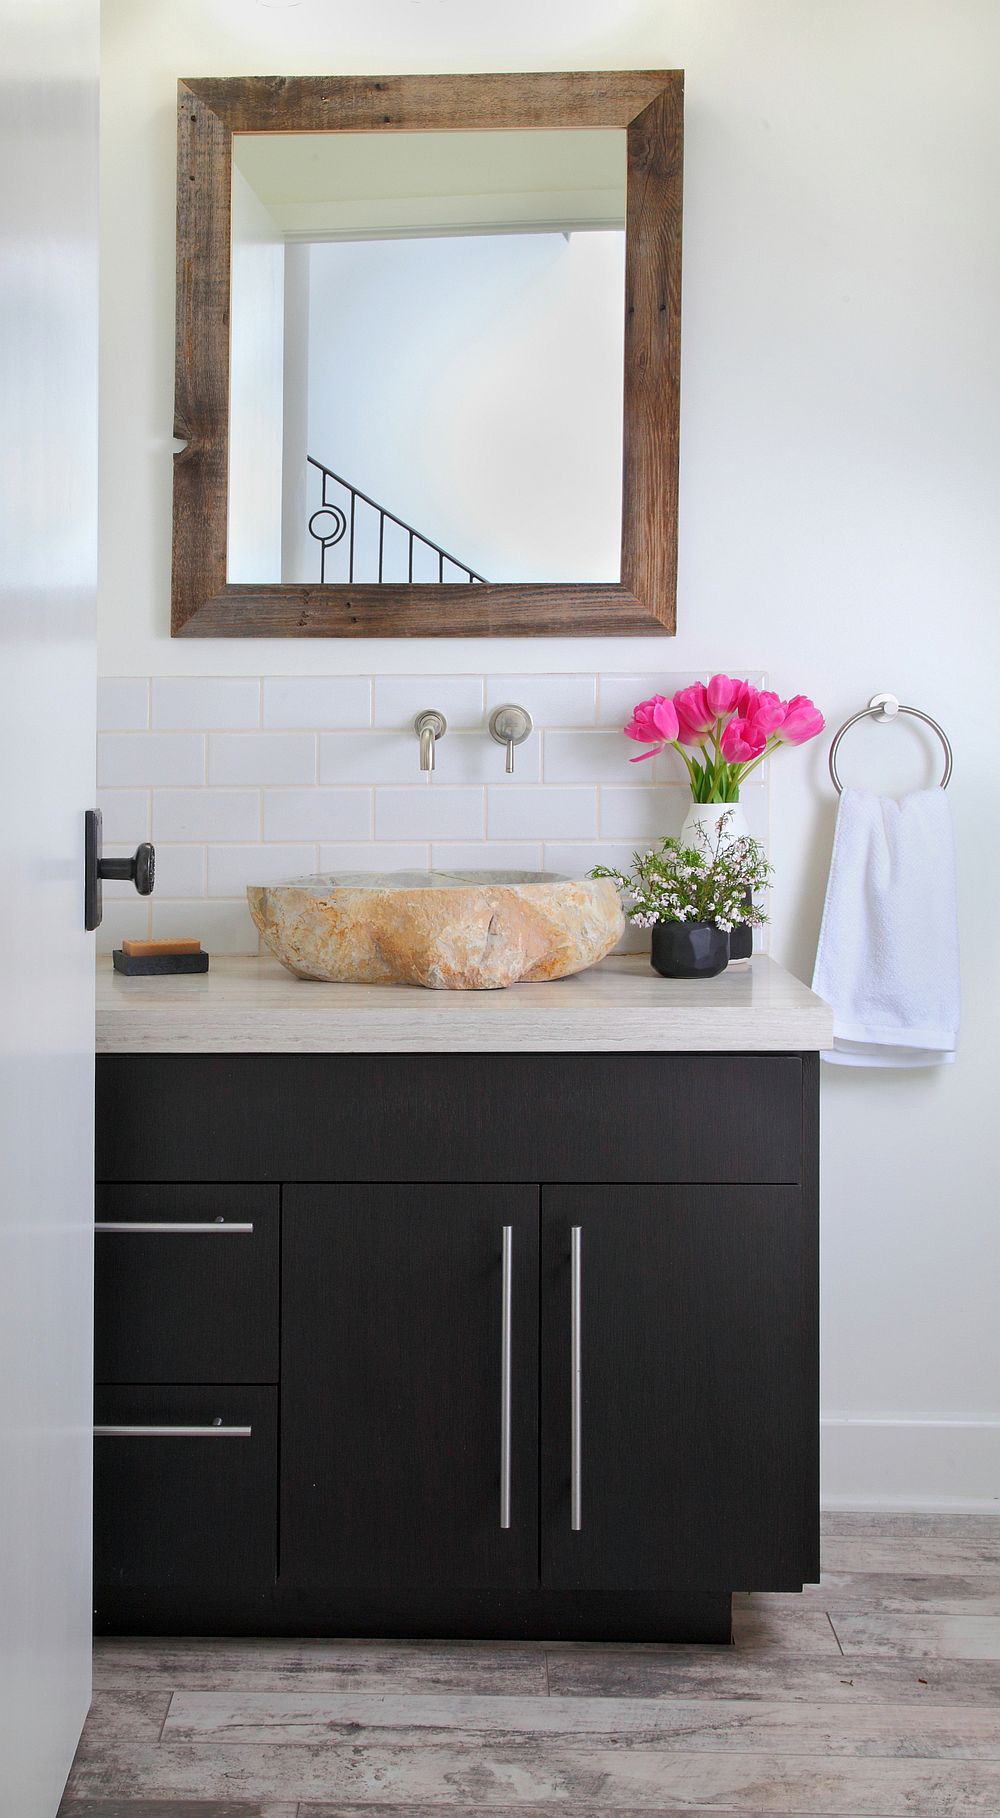 Hình ảnh phòng tắm đẹp với bồn rửa làm từ đá nguyên khối, gường treo khung gỗ, lọ hoa tuy líp, tủ sơn đen